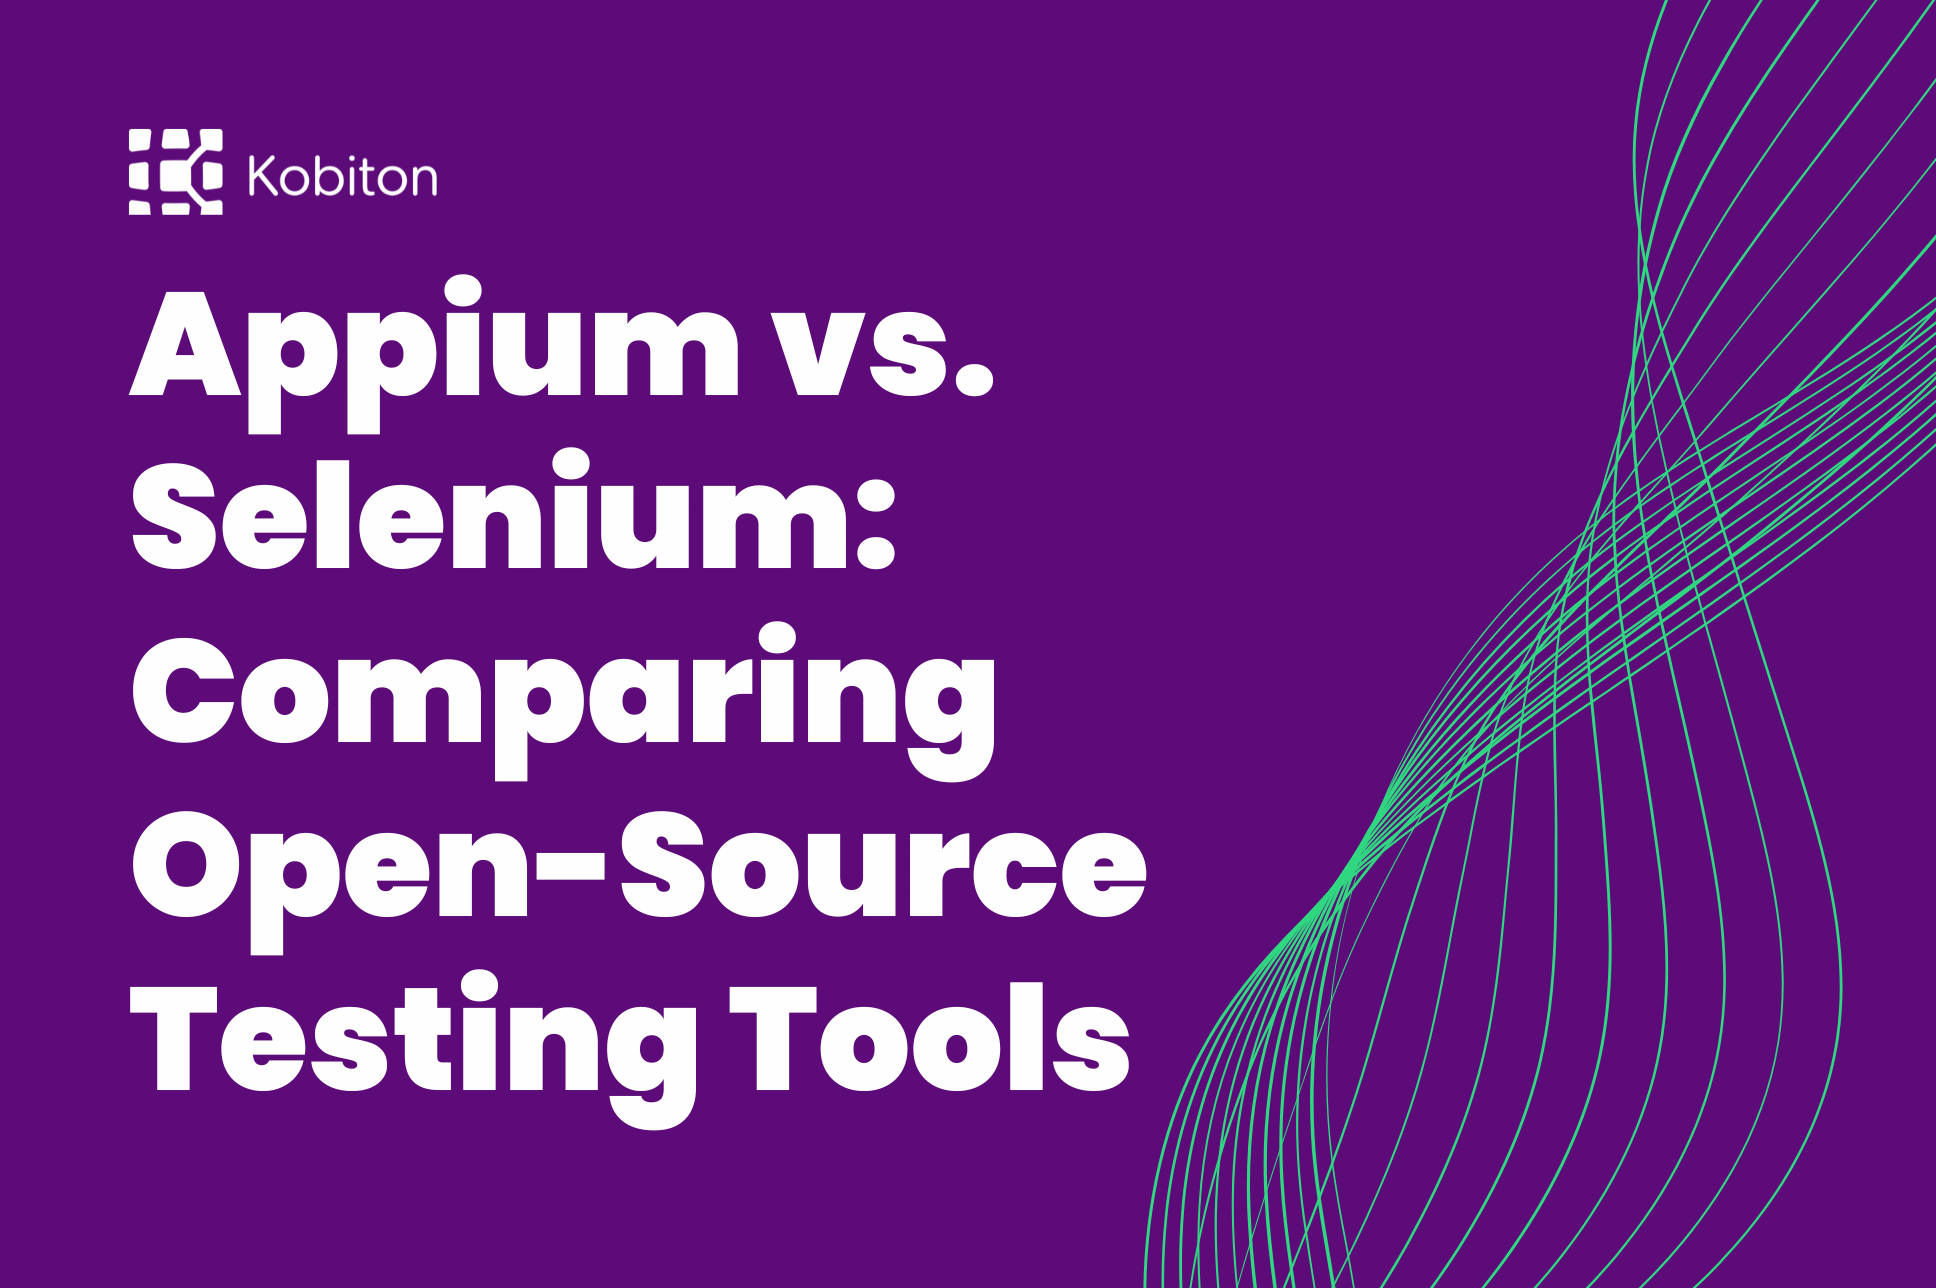 Appium vs. Selenium: Comparing Open-Source Testing Tools